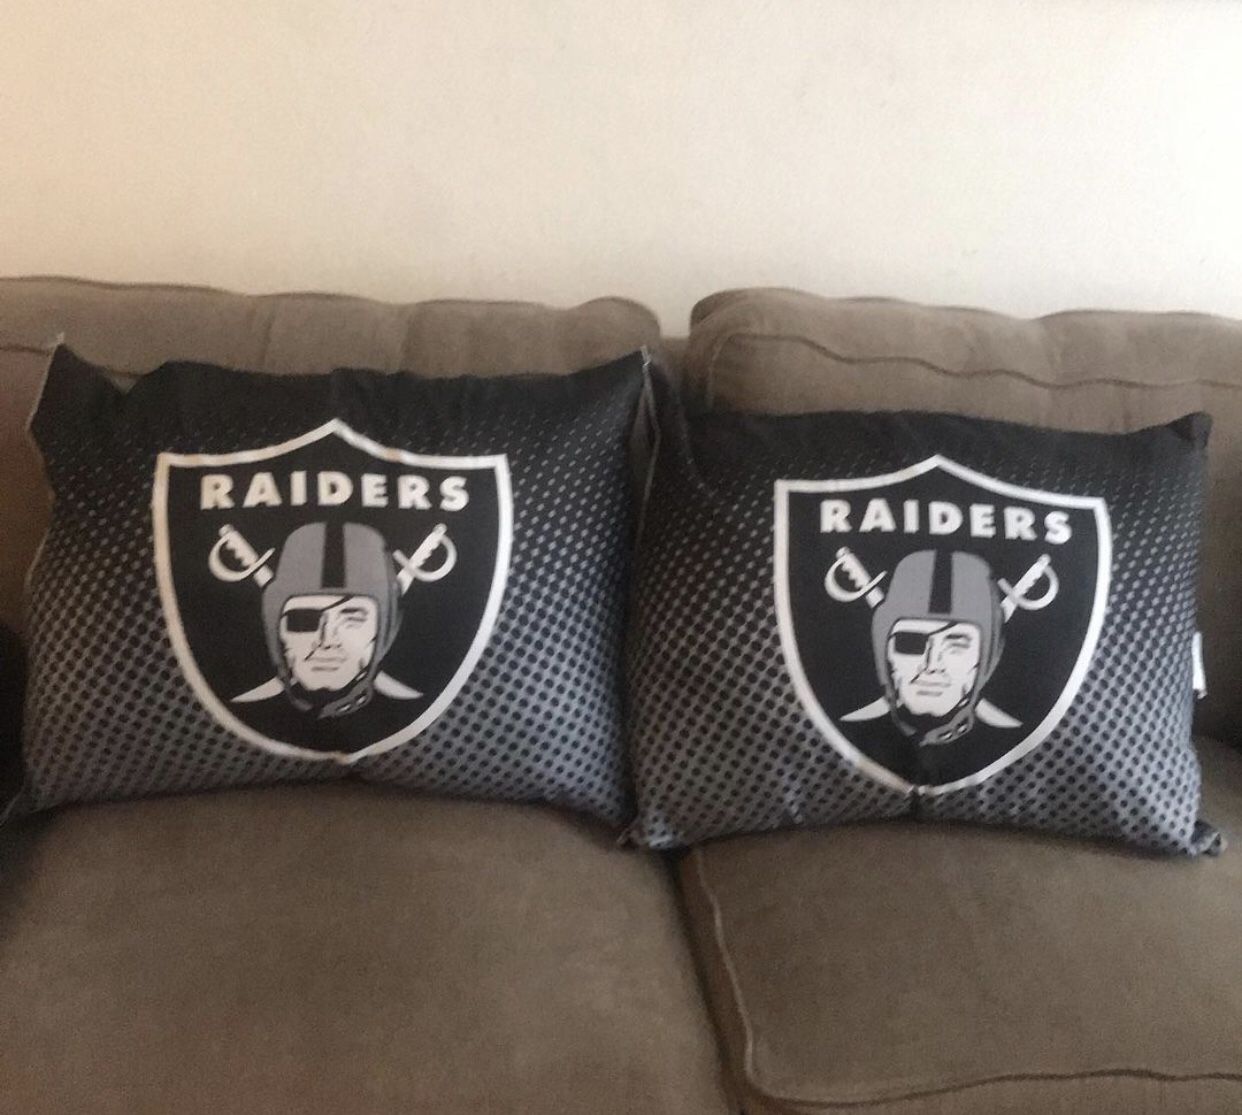 Raiders Pillows $20 each